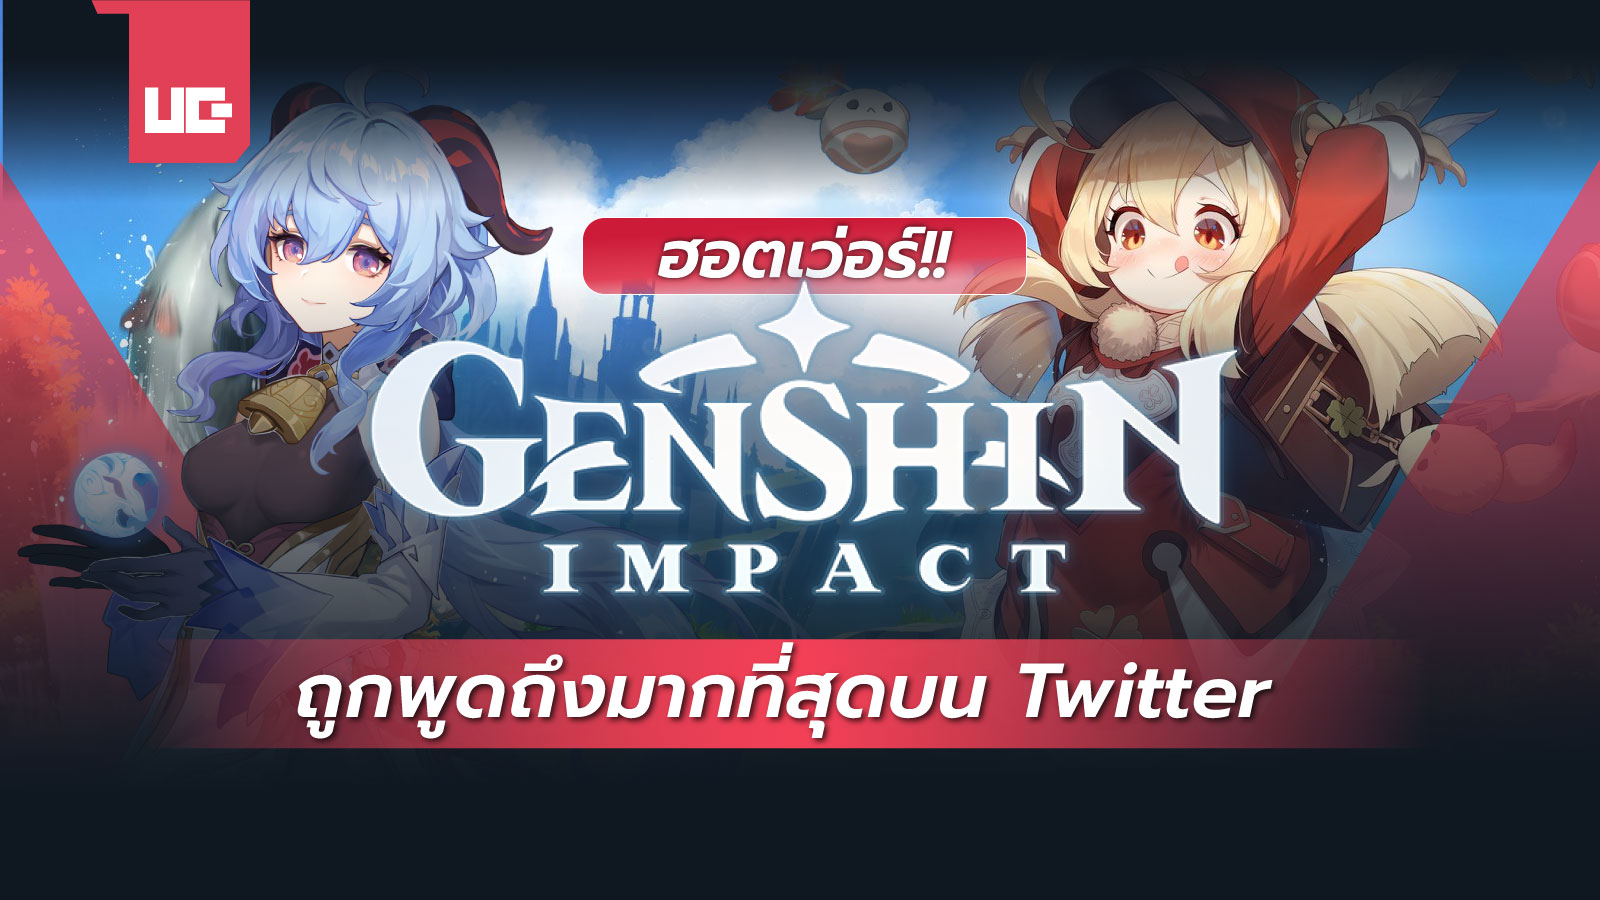 ฮอตเว่อร์!! Genshin Impact ถูกพูดถึงมากที่สุดบน Twitter